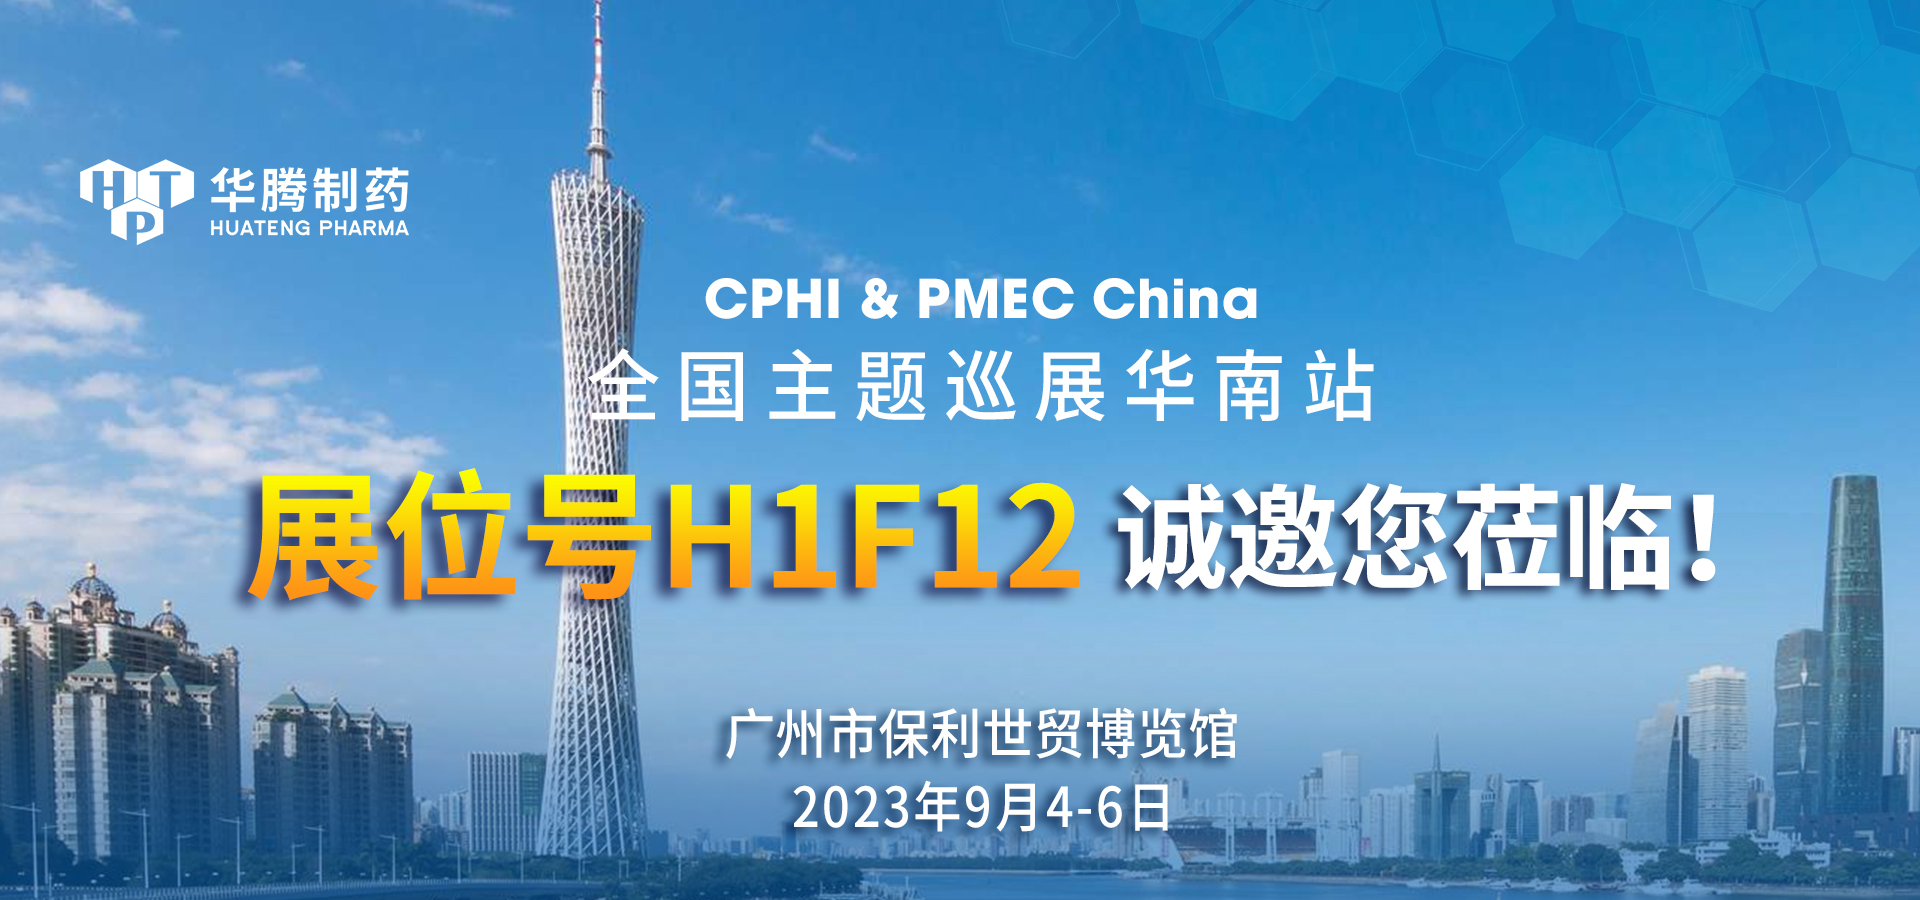 【展會邀約】華騰制藥與您相約CPHI & PMEC China全國主題巡展華南站